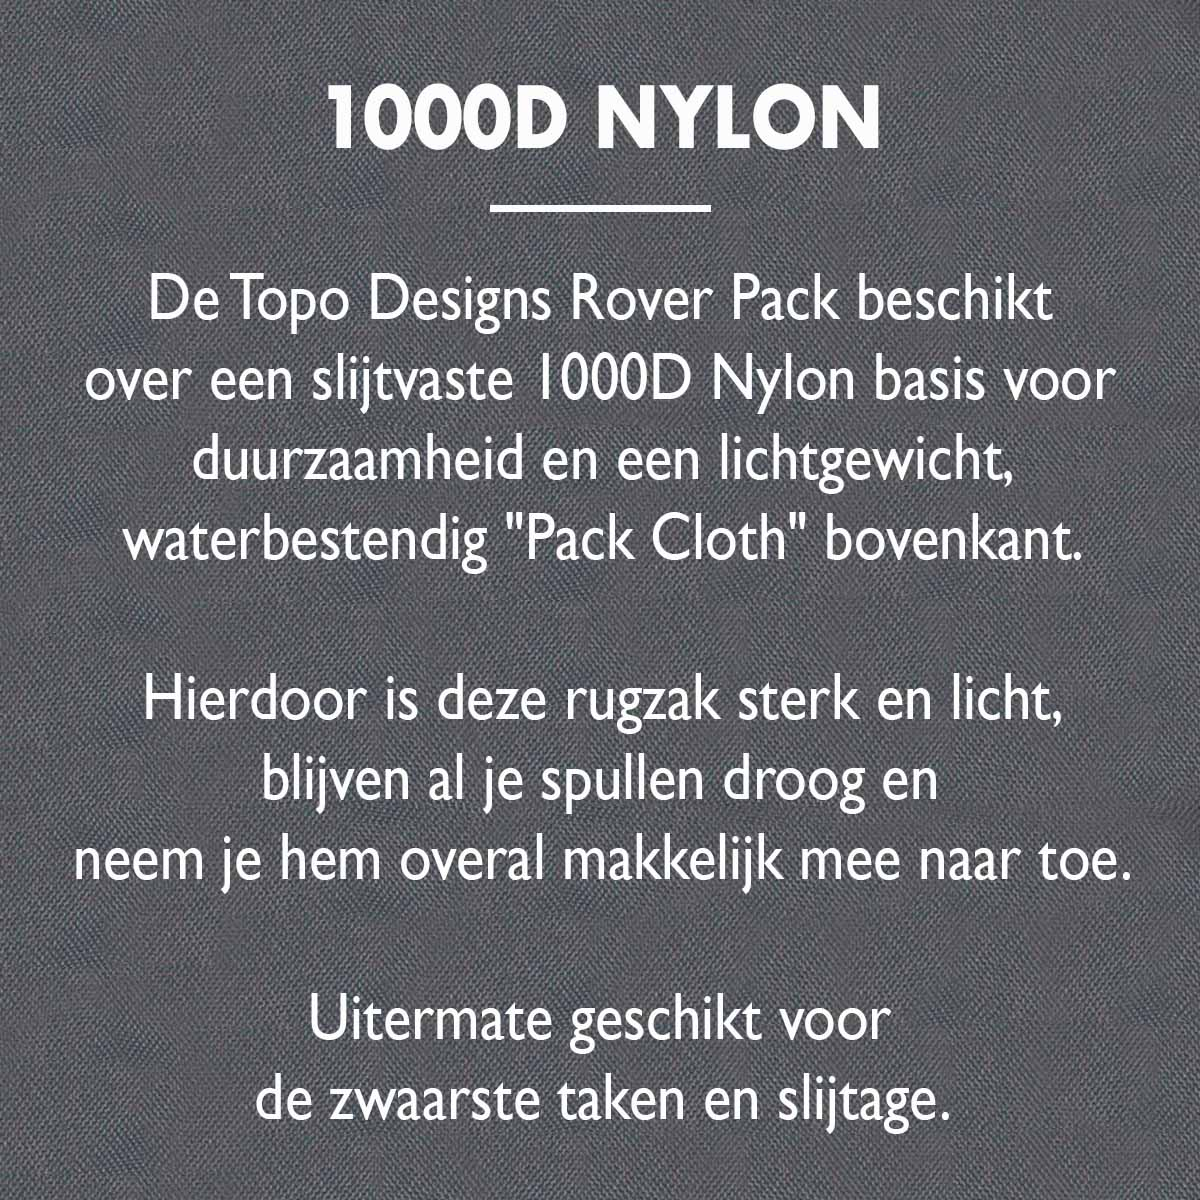 Topo Designs Rover Pack Classic 1000D Nylon